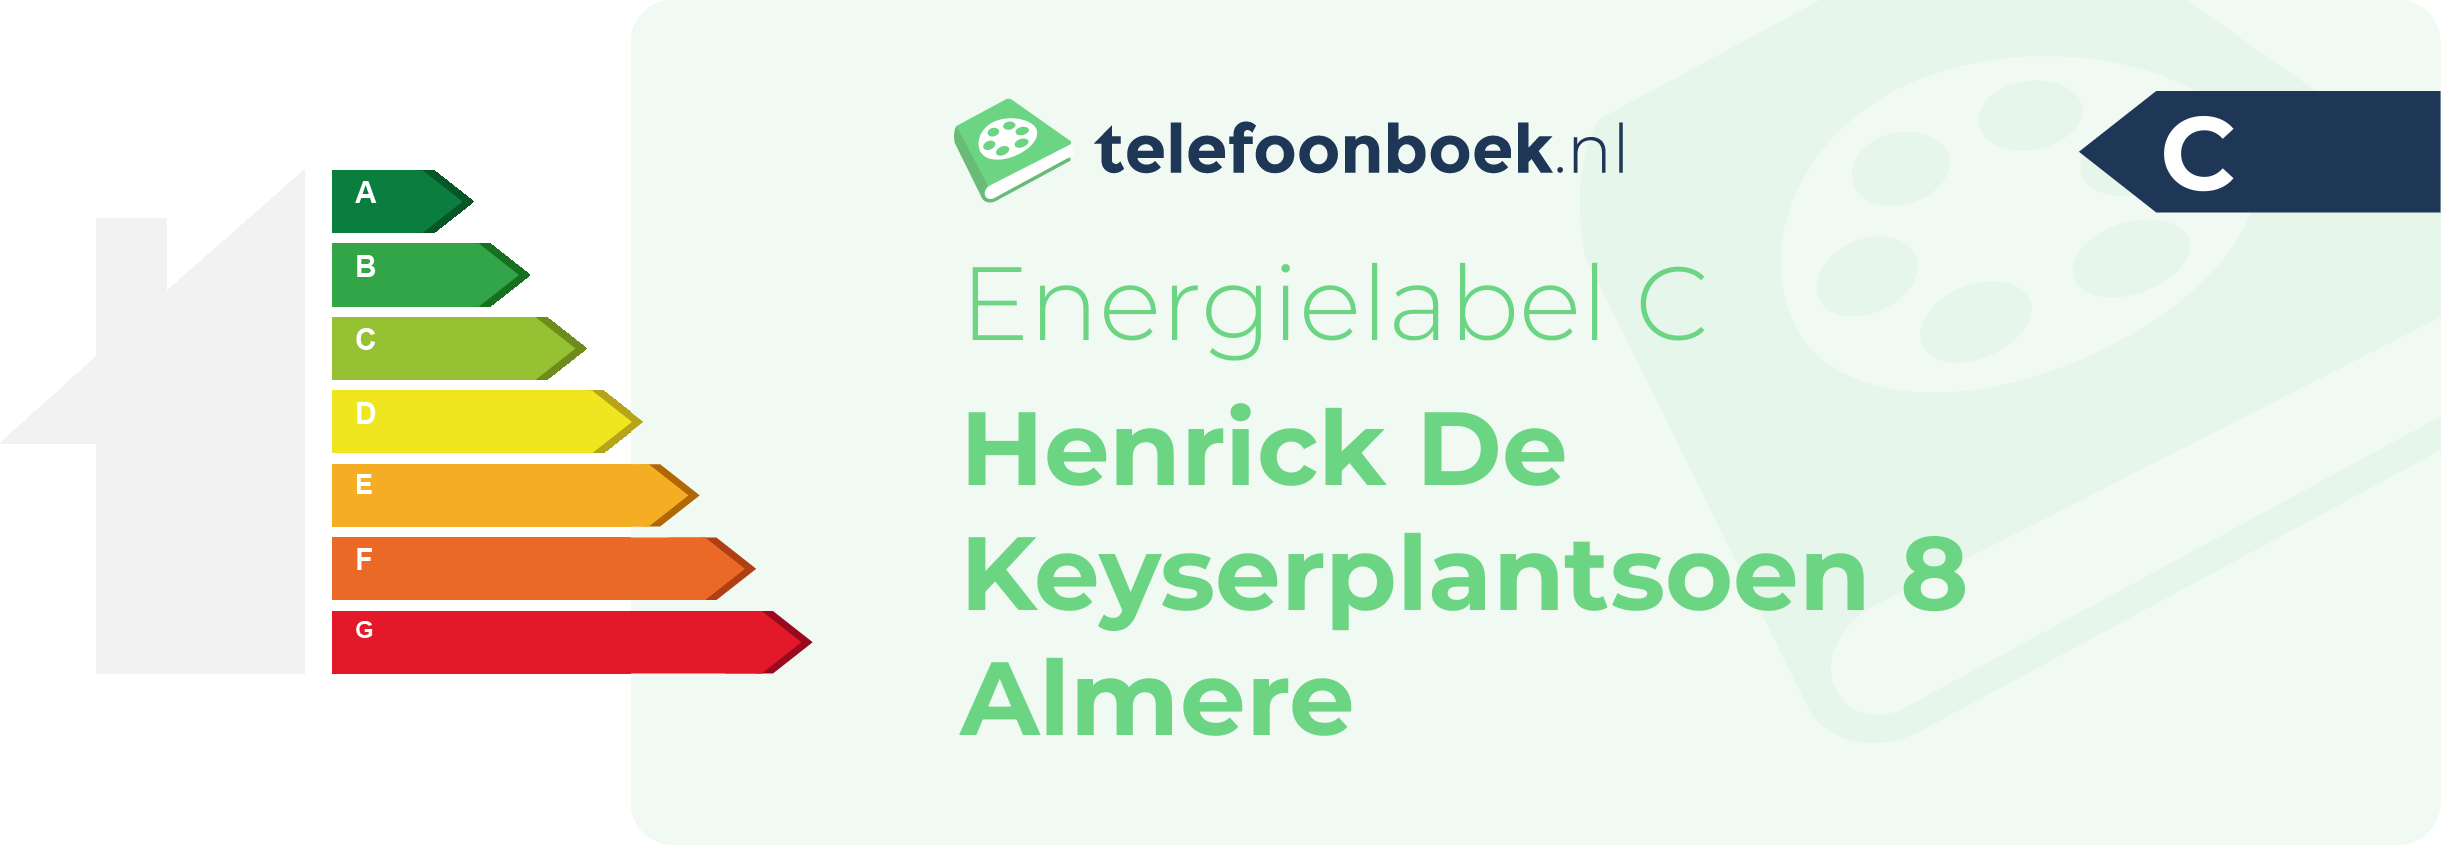 Energielabel Henrick De Keyserplantsoen 8 Almere